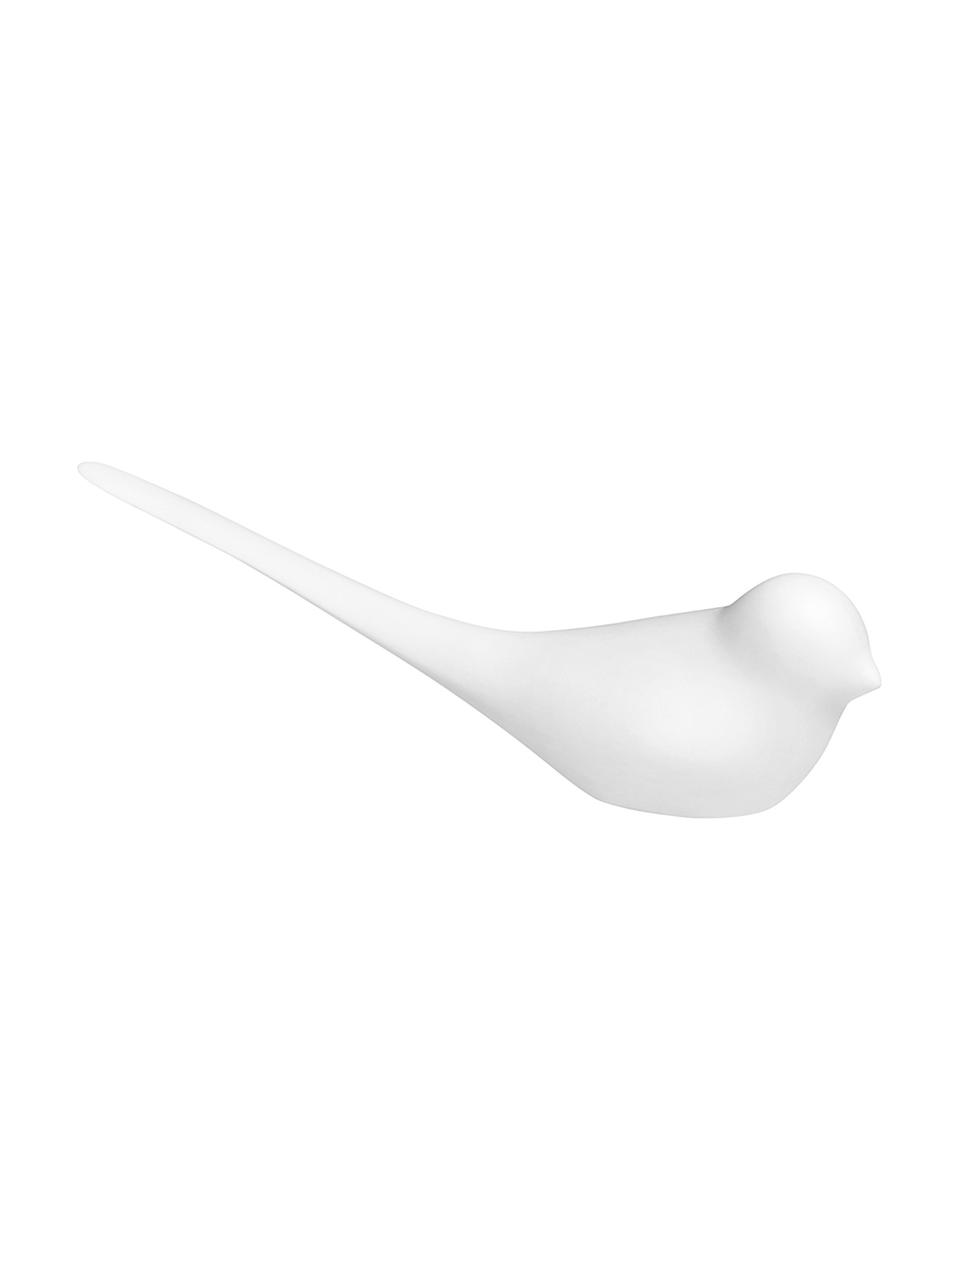 Porseleinen briefopener Vogel in wit, Porselein, Wit, B 4 x L 15 cm